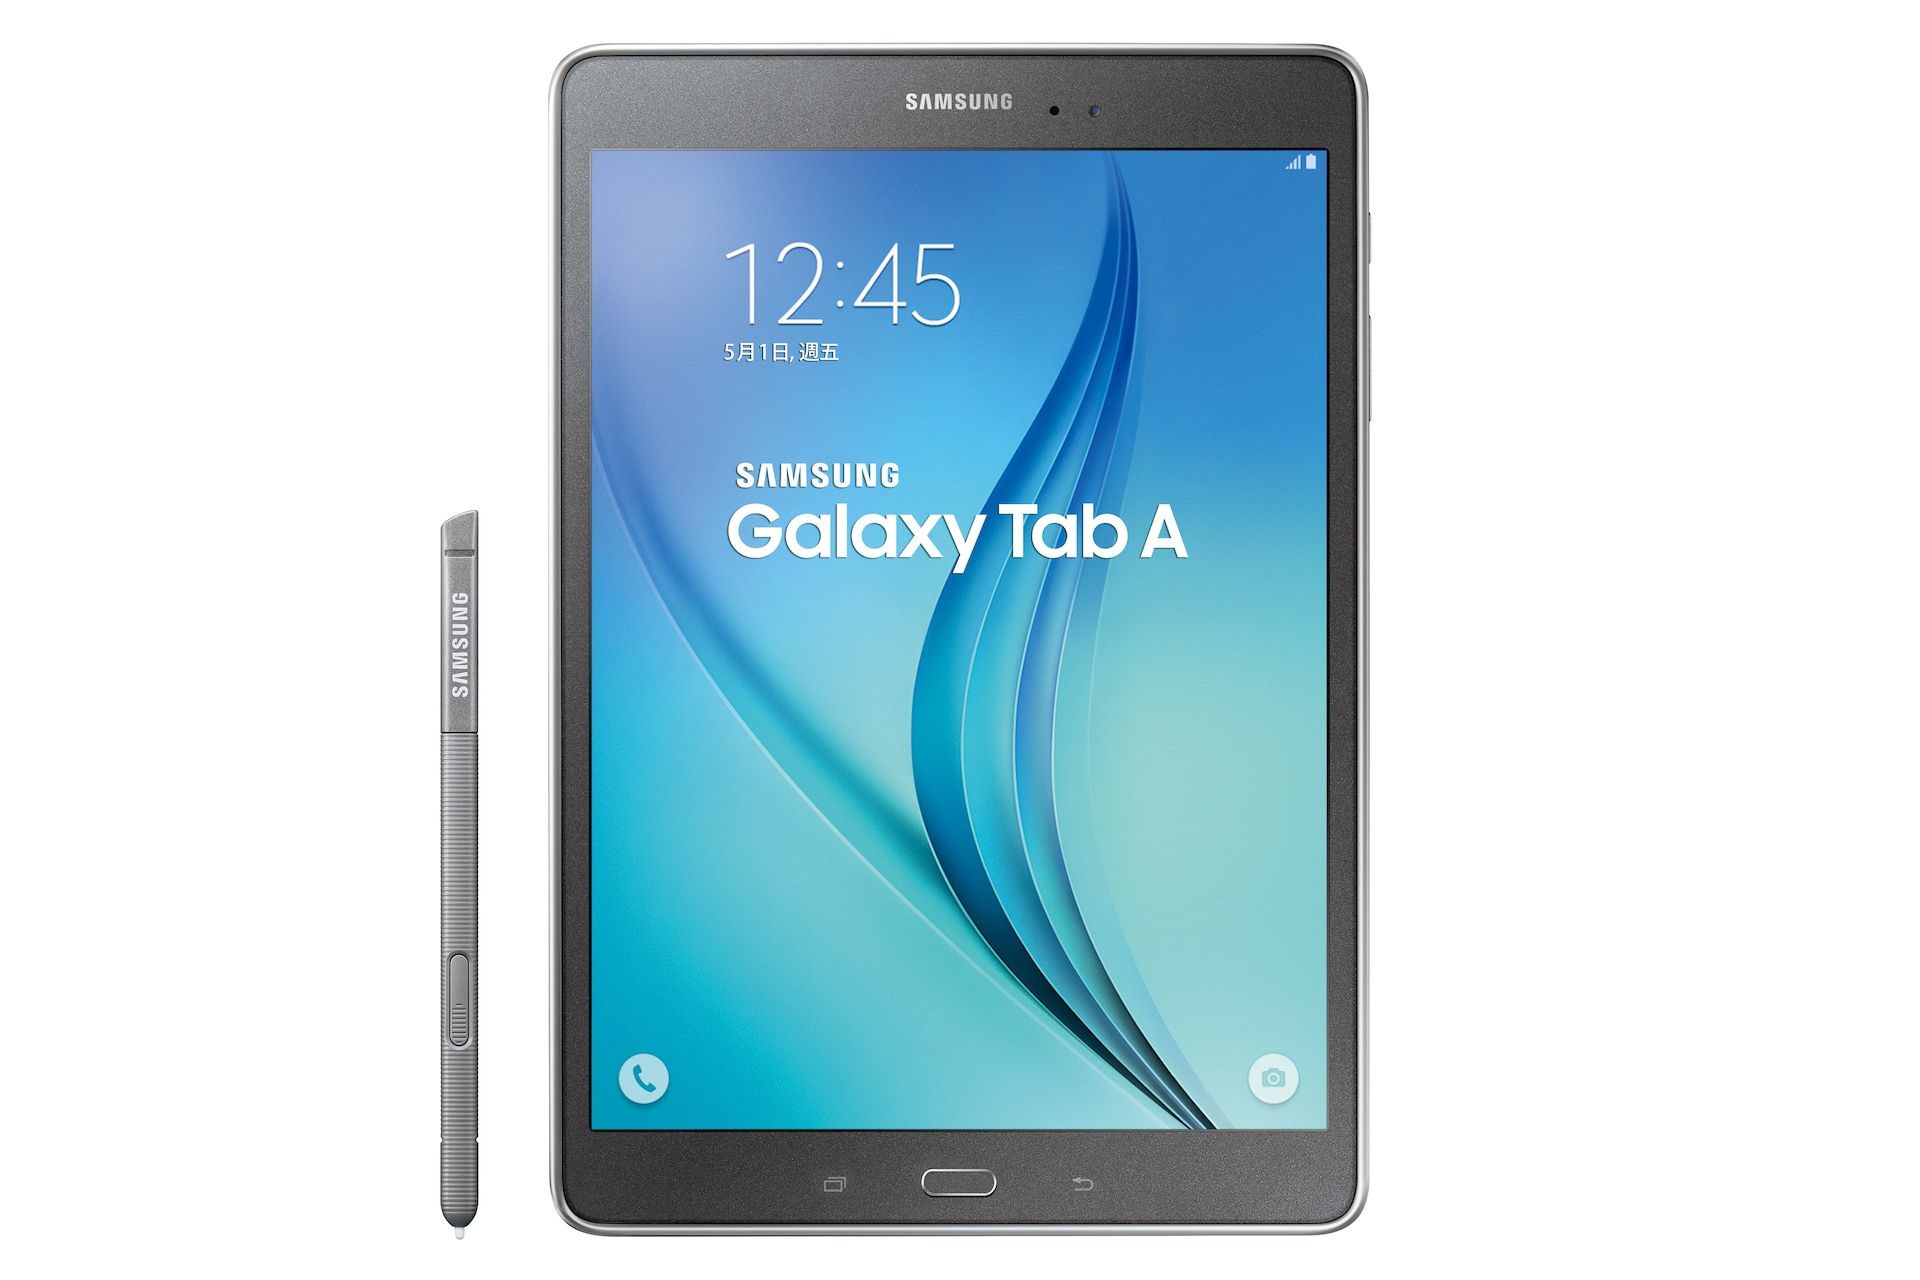 Galaxy Tab A 9.7 4G LTE Samsung 支援 台灣